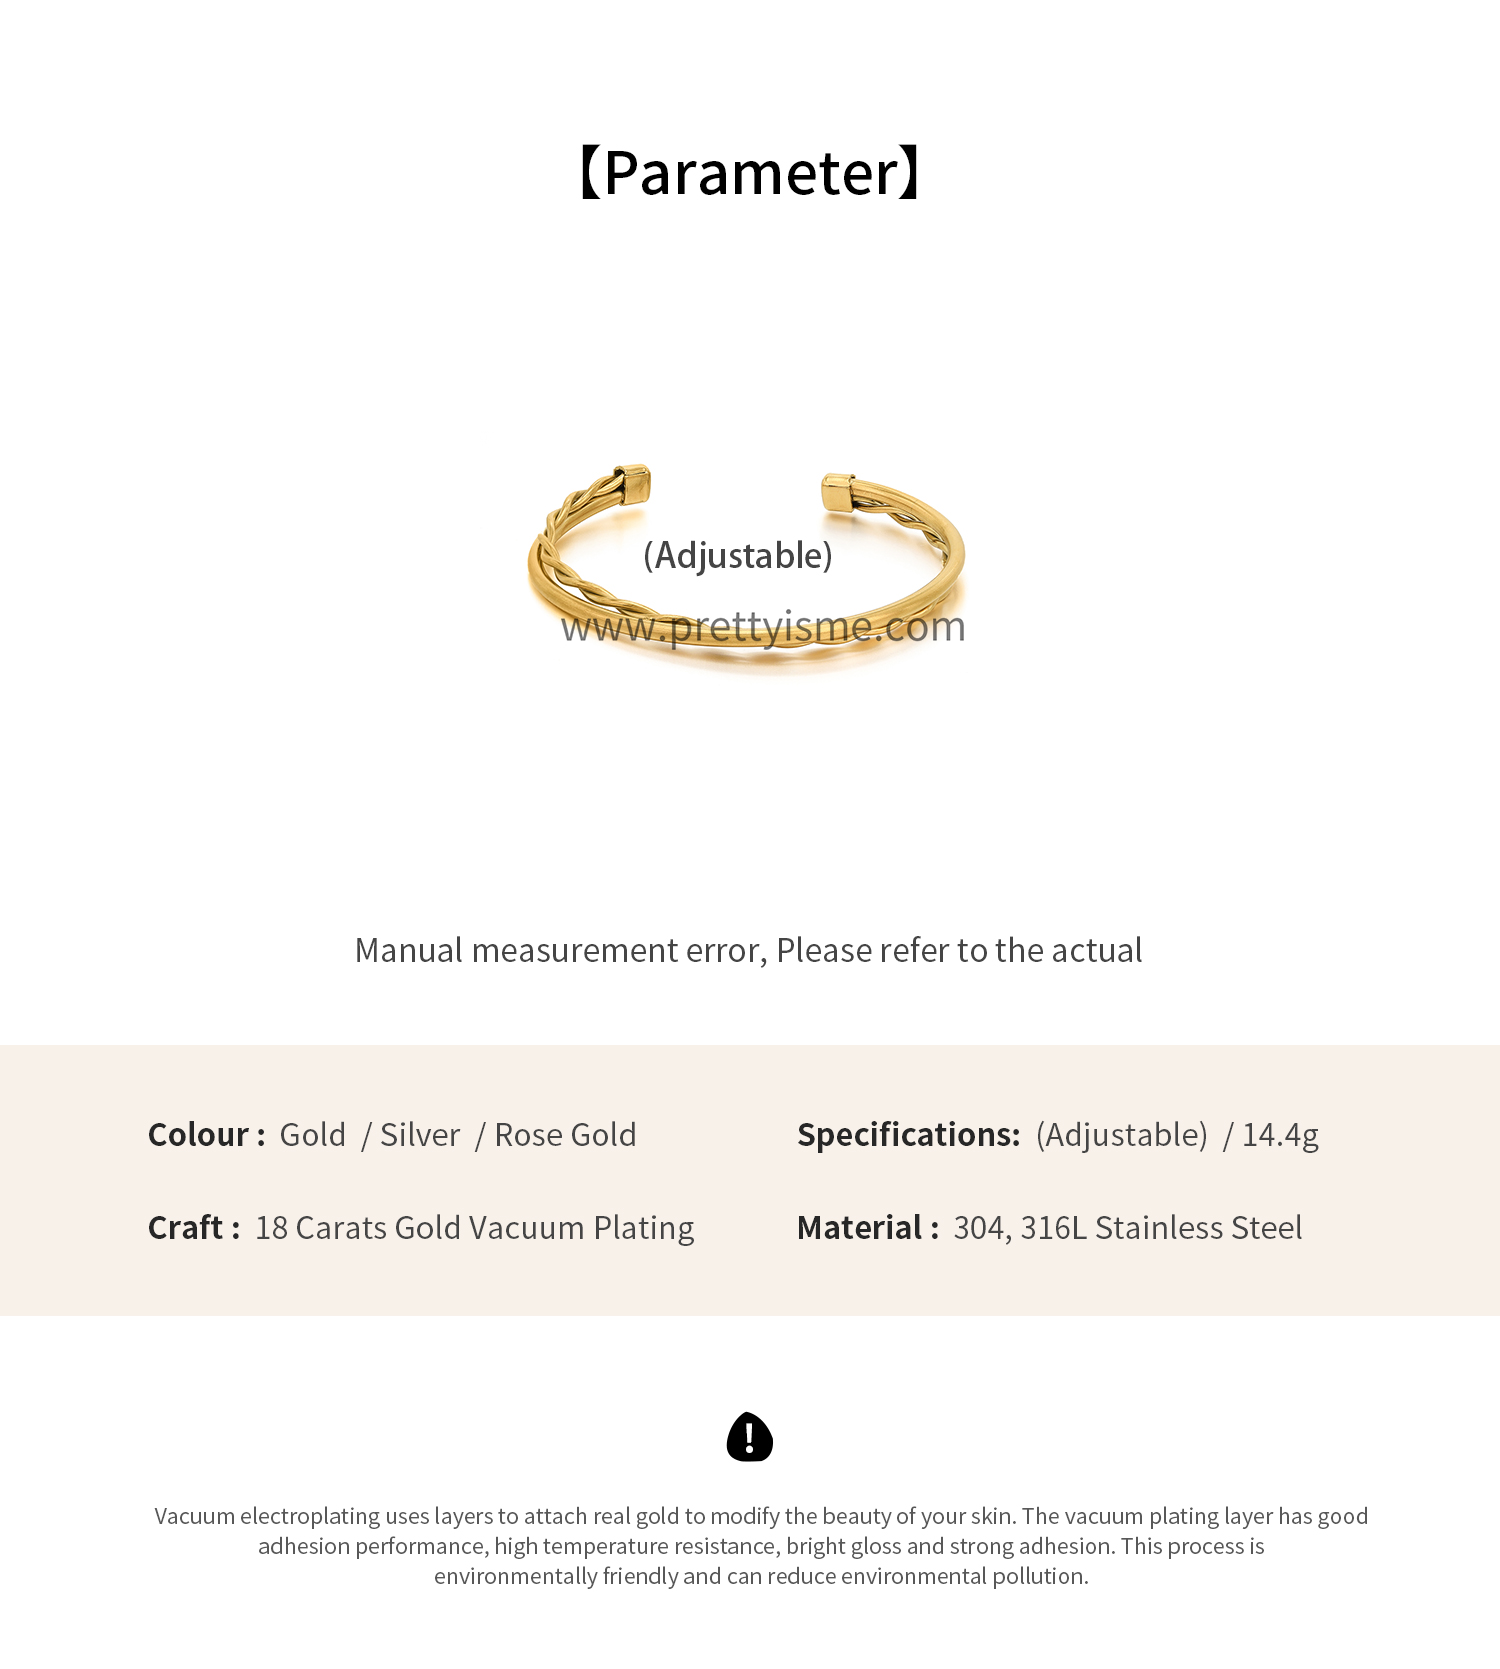 Interwoven Smooth Gold Stainless Steel Bracelet Waterproof Elegant Simple Bracelet (6).webp